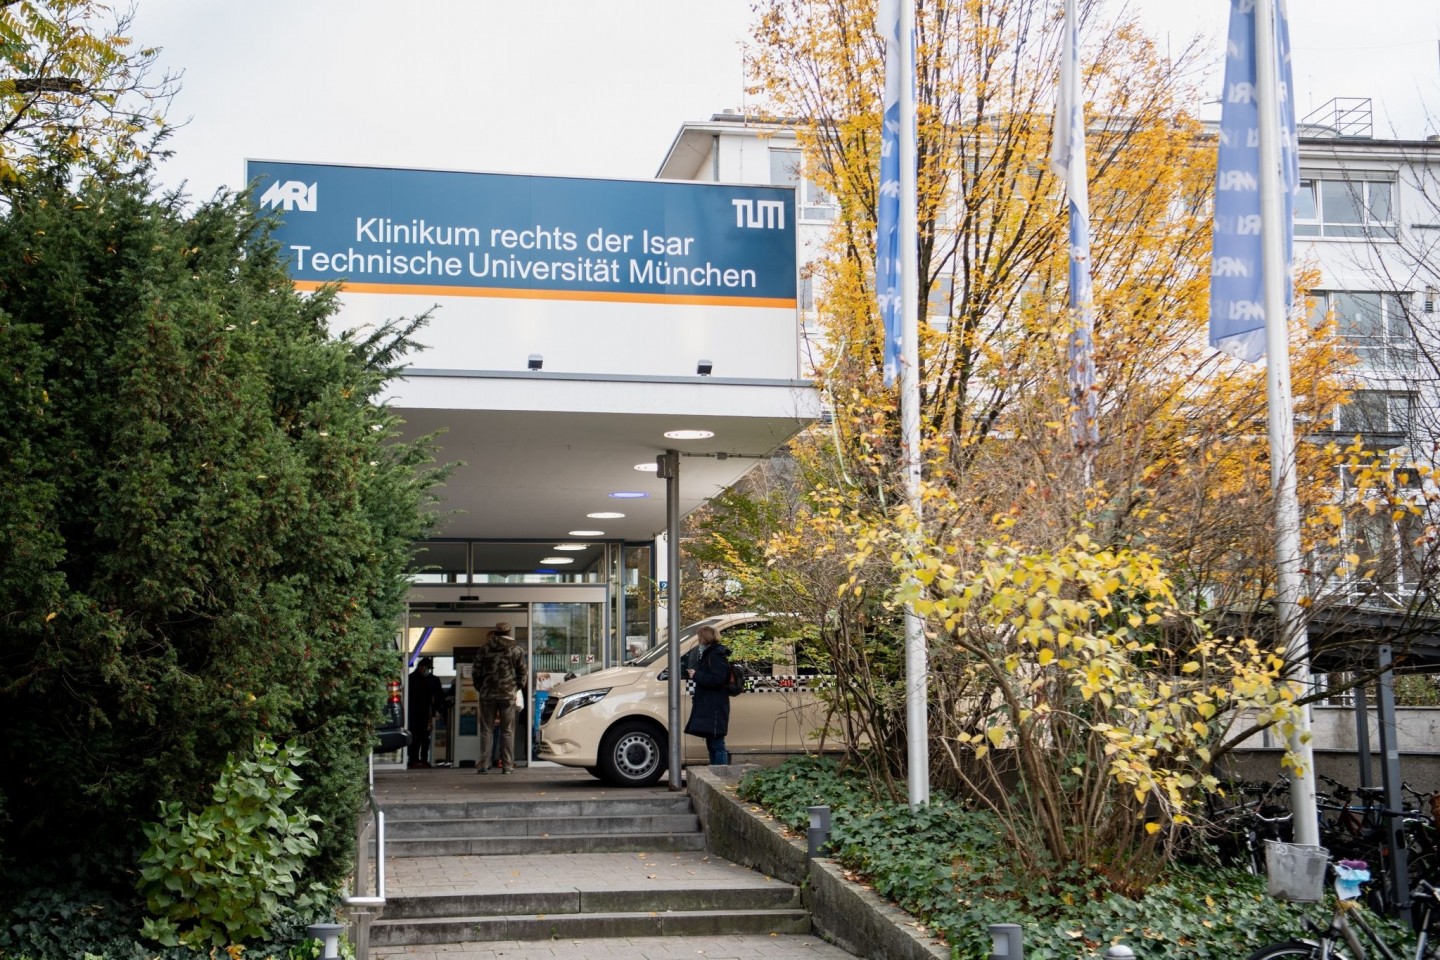 Klinikum rechts der Isar - Technische Universität München. Hier spritzte der Pfleger den Patienten eine Überdosis eines Medikaments, das ihnen nicht verabreicht werden sollte.